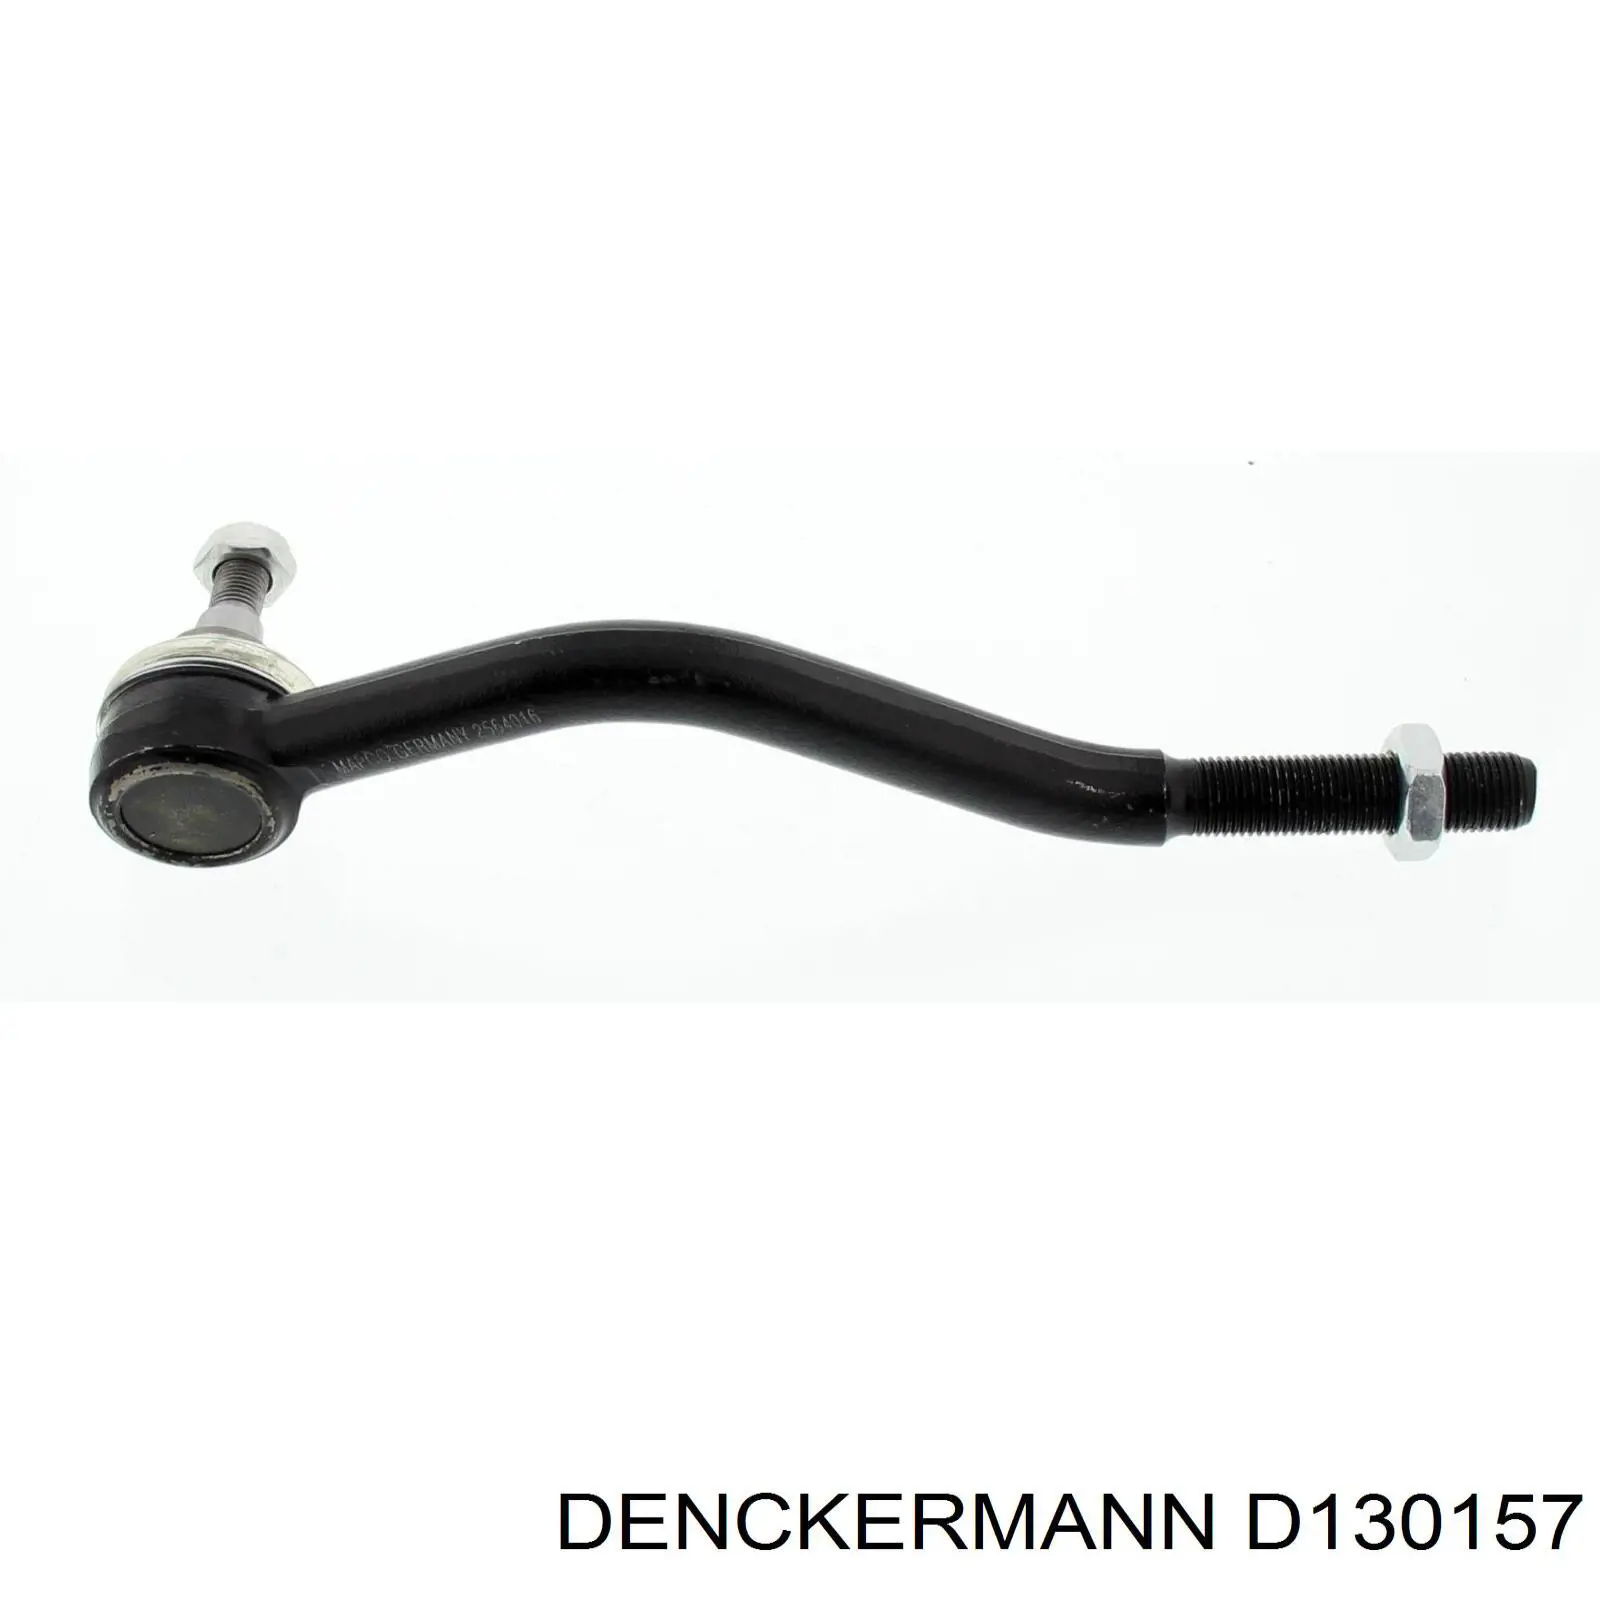 D130157 Denckermann rótula barra de acoplamiento exterior